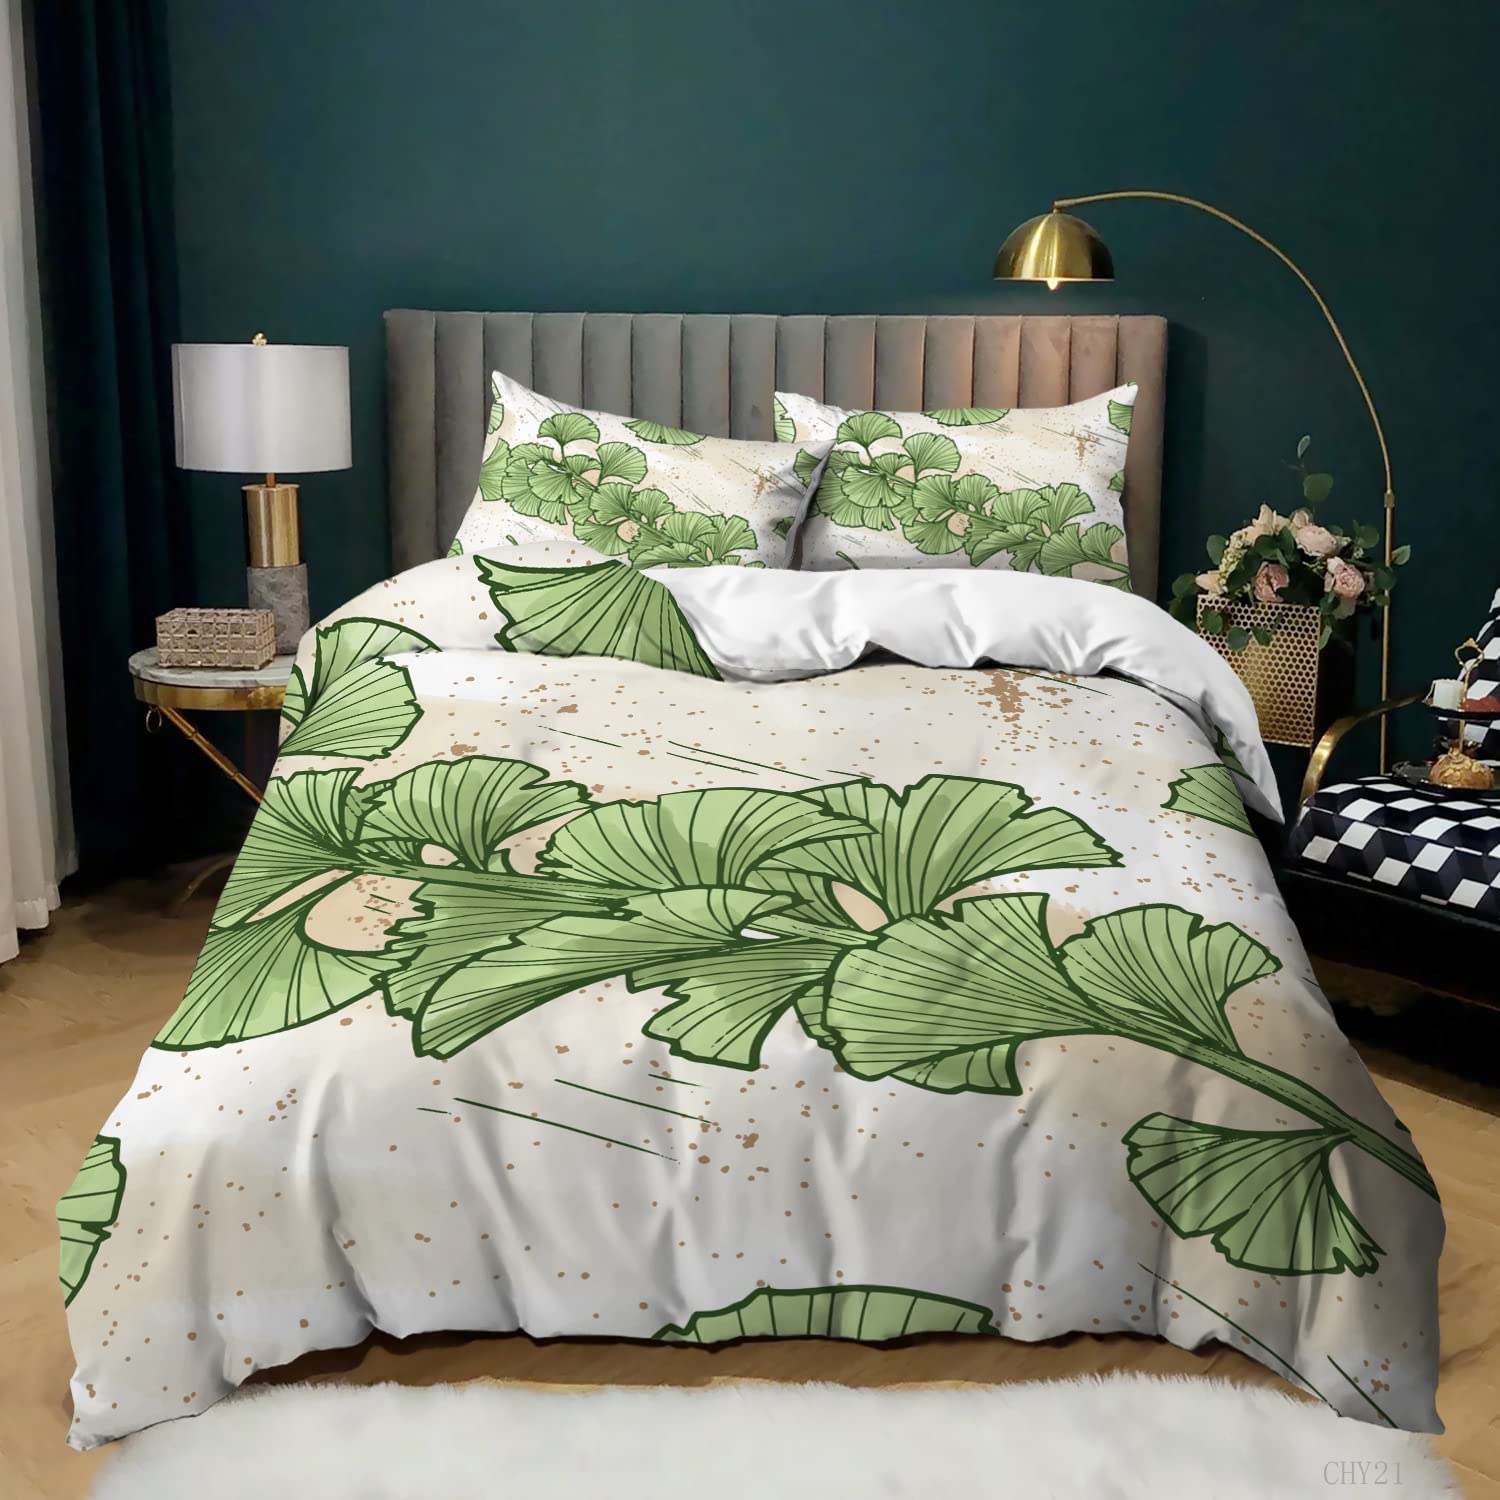 Ginkgo Botanik Nevresim Kapak Yeşil Turuncu Bitki Yorgan Kapak Yaprak Desenli Yorgan Kapağı Lüks Botanik Yatak Odası Dekorasyonu